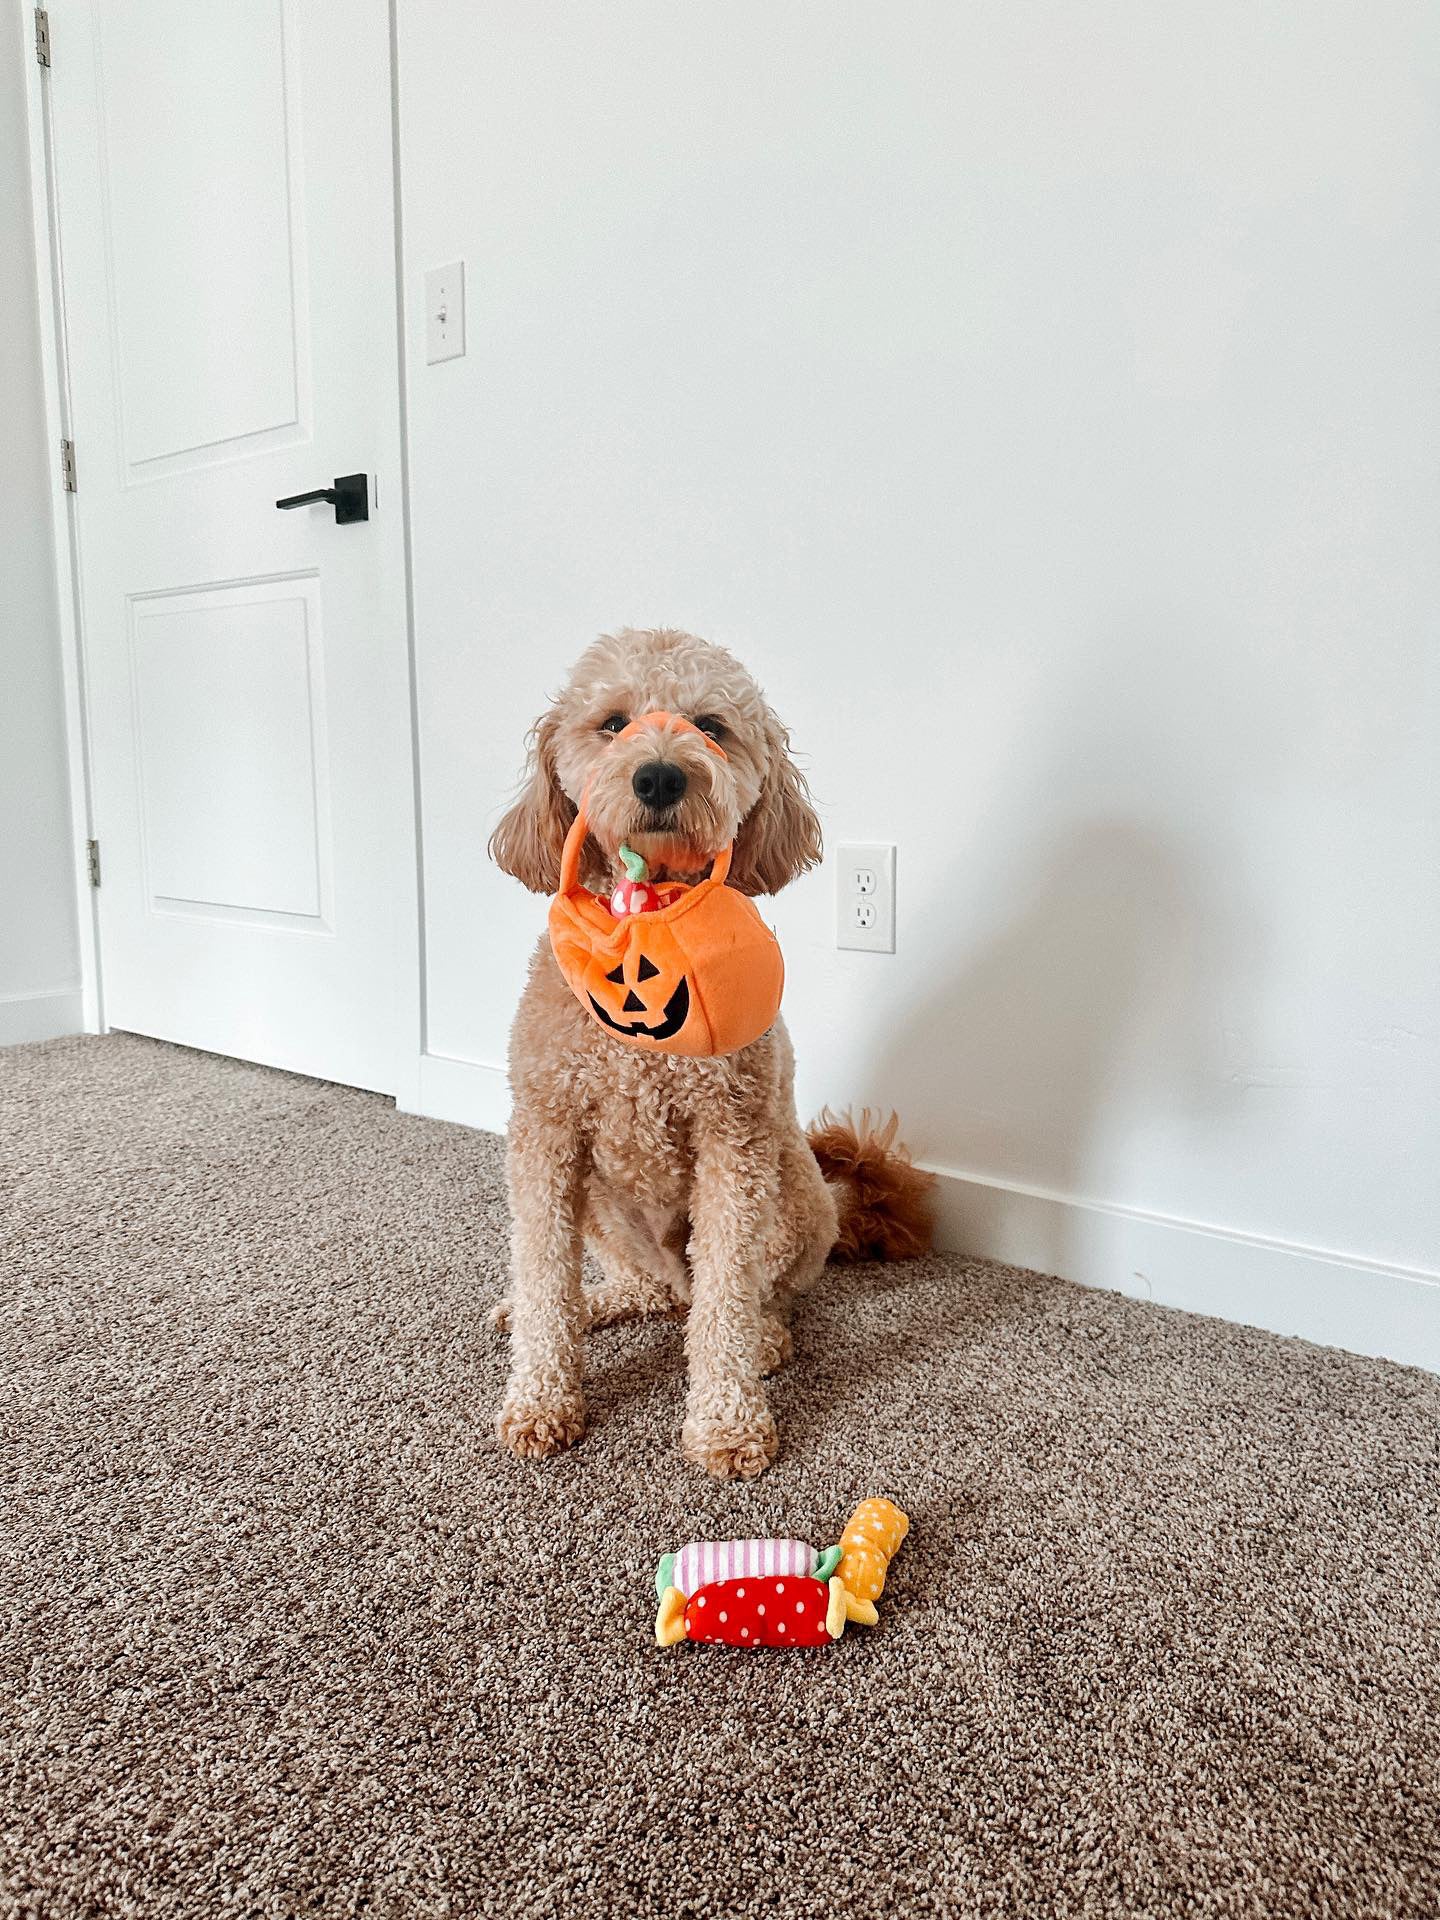 Midlee Find a Toy Halloween Pumpkin Bucket Dog Toy